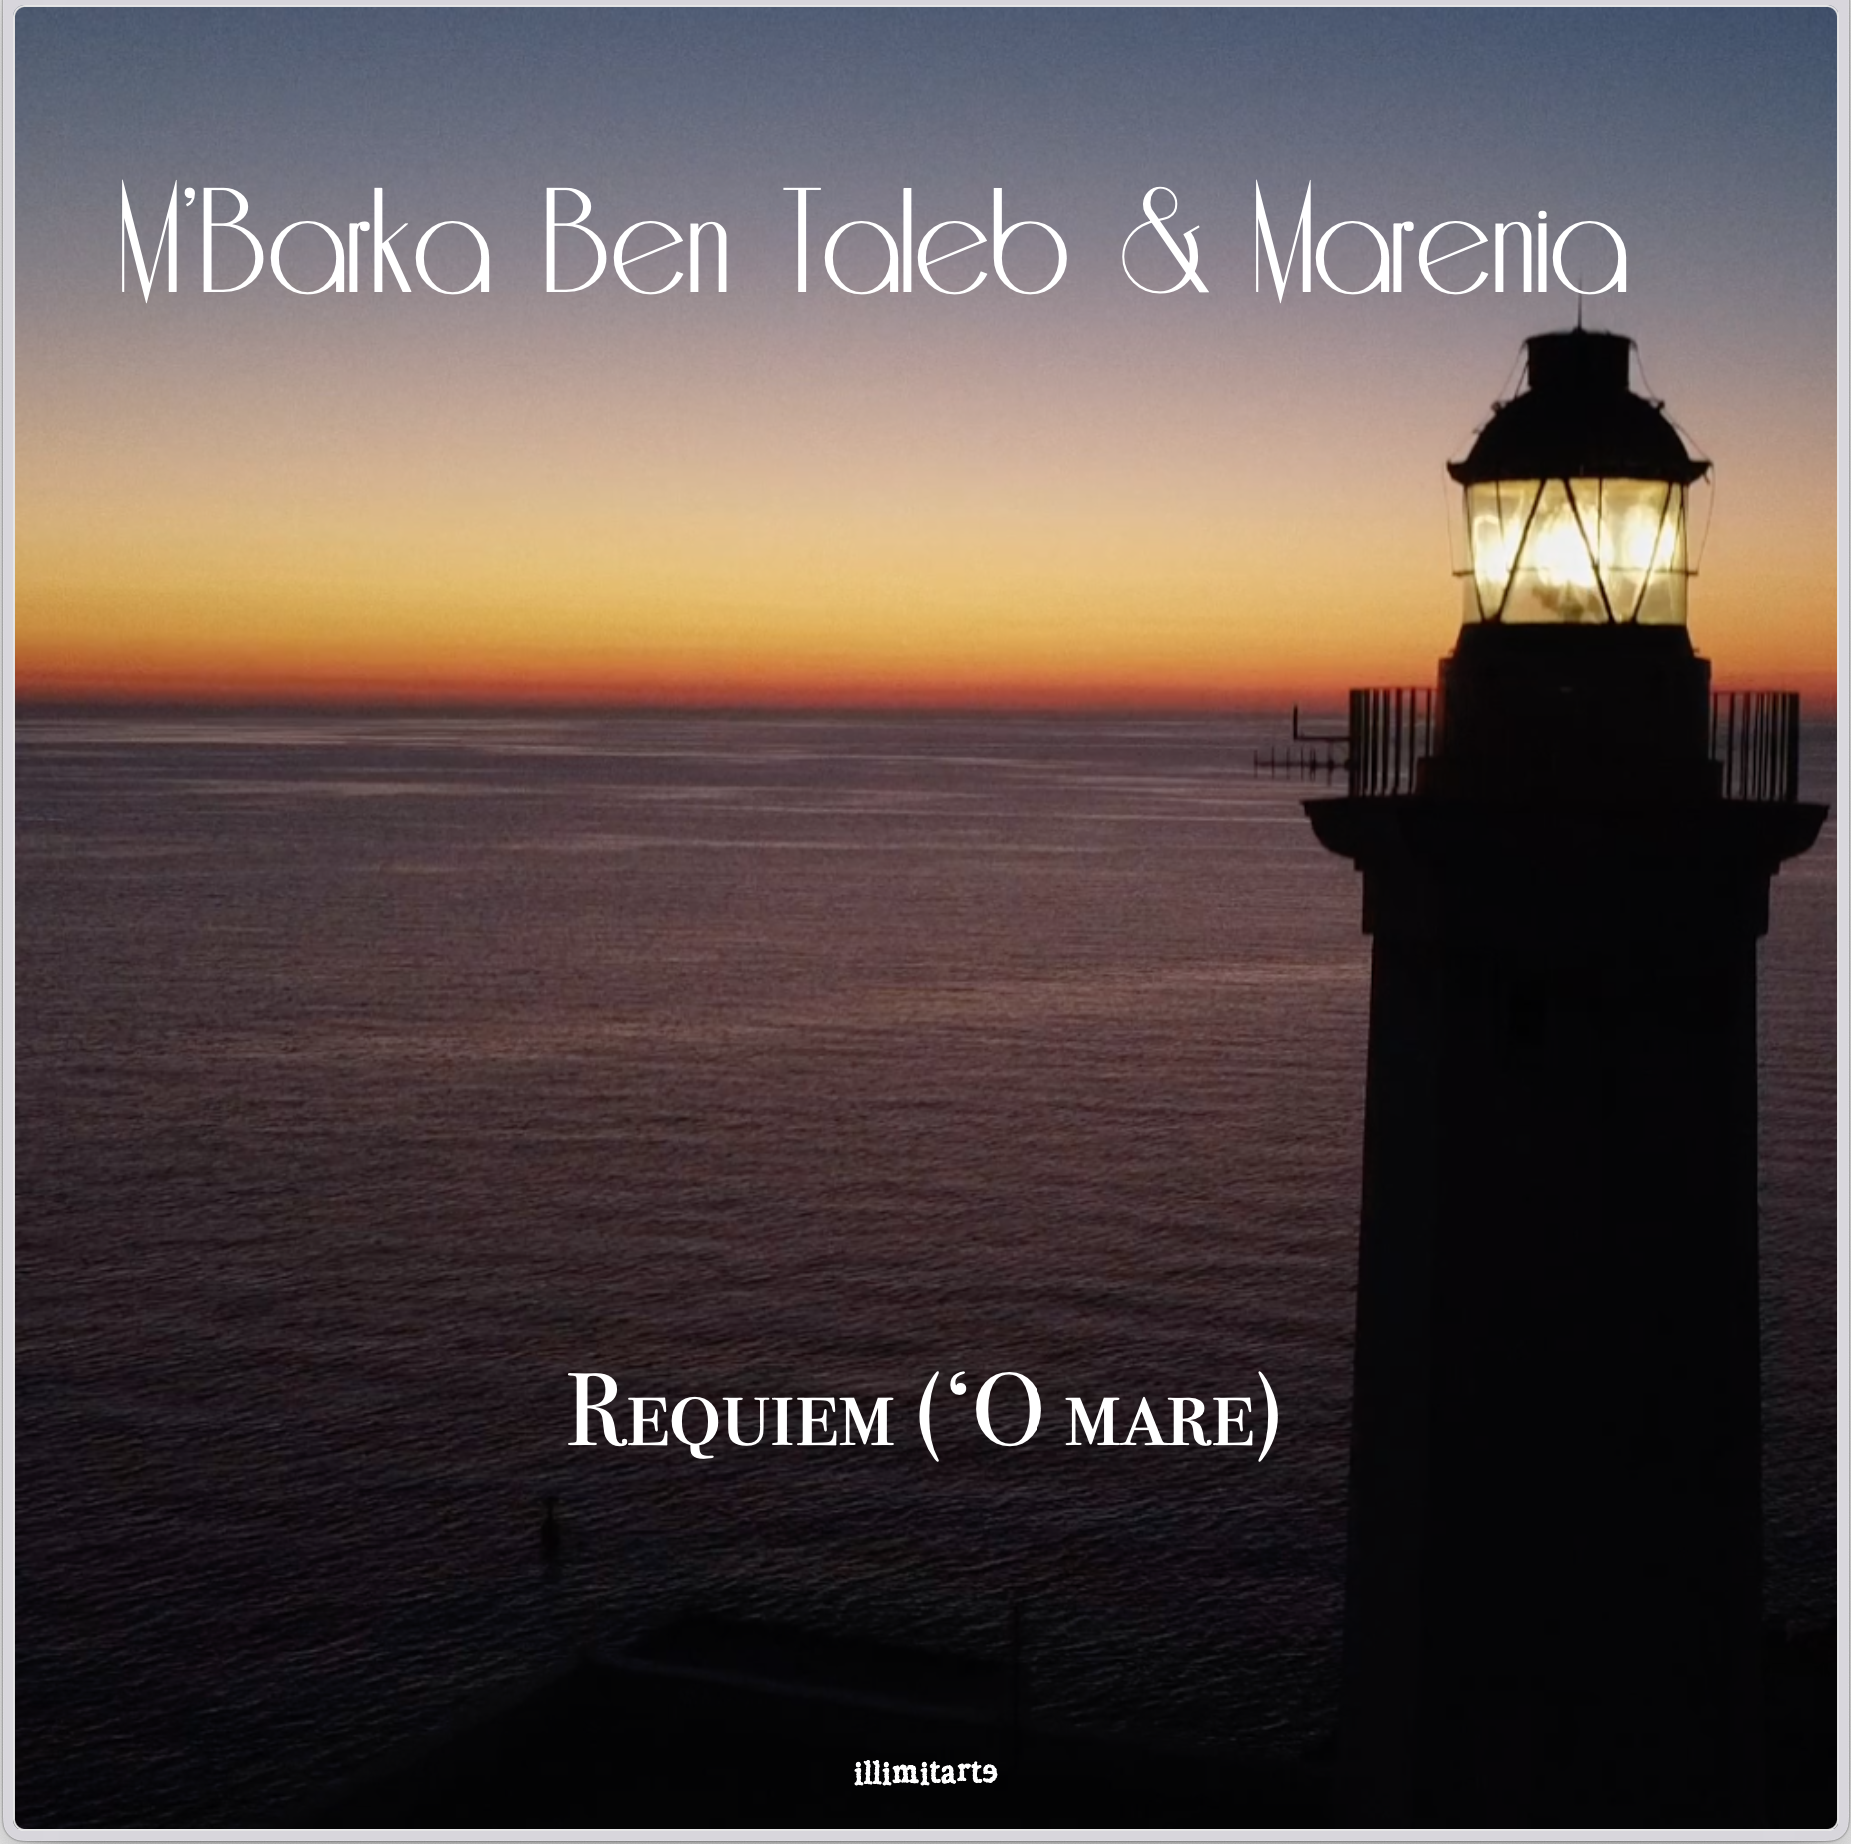 Marenia & M’Barka Ben Taleb per la Casa delle Sonorità Mediterranee